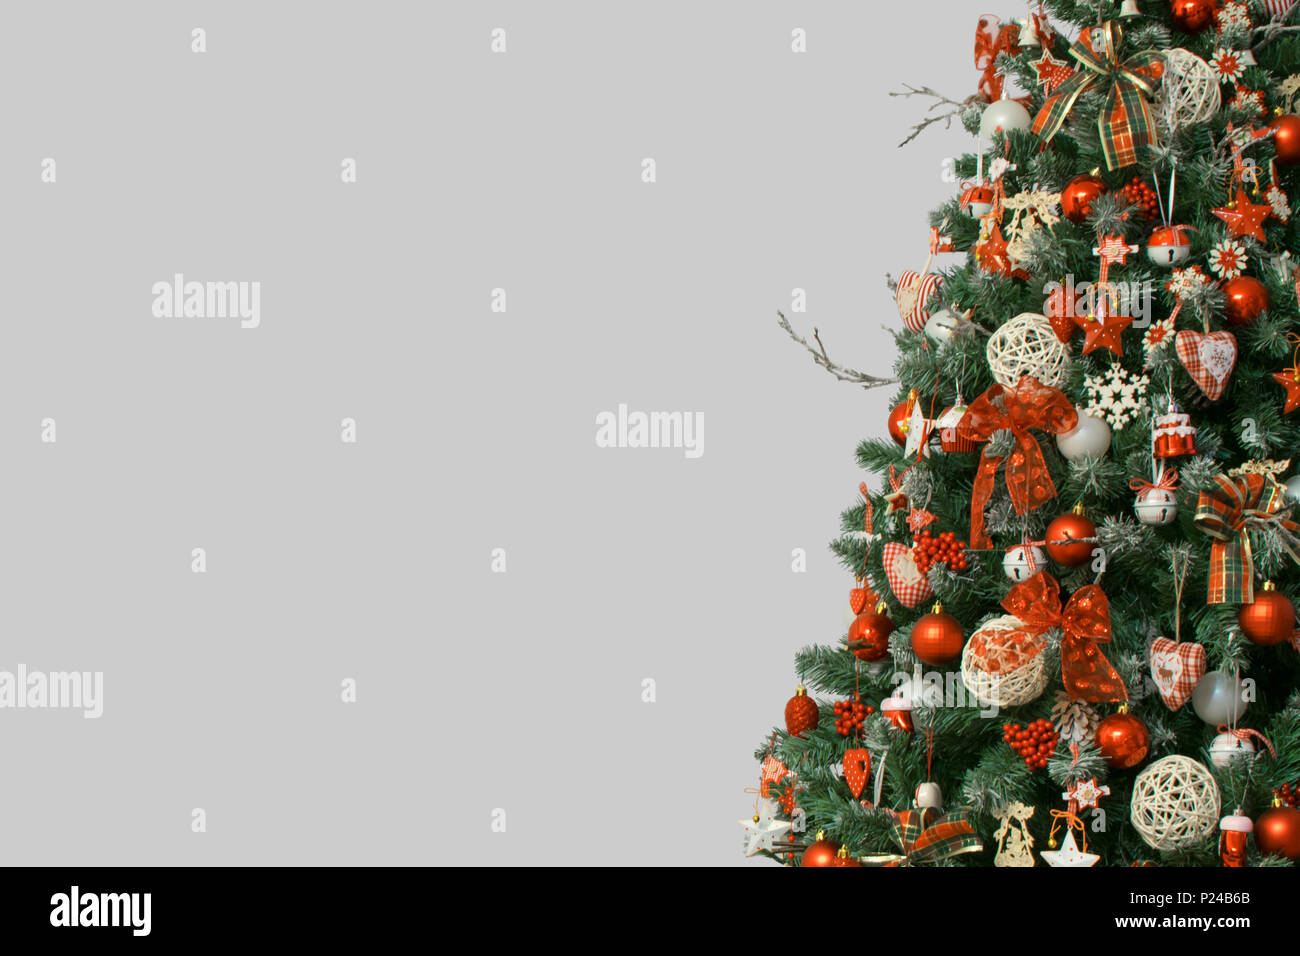 Détail de l'arbre de Noël isolé sur fond gris, décoré avec des ornements de cru Banque D'Images